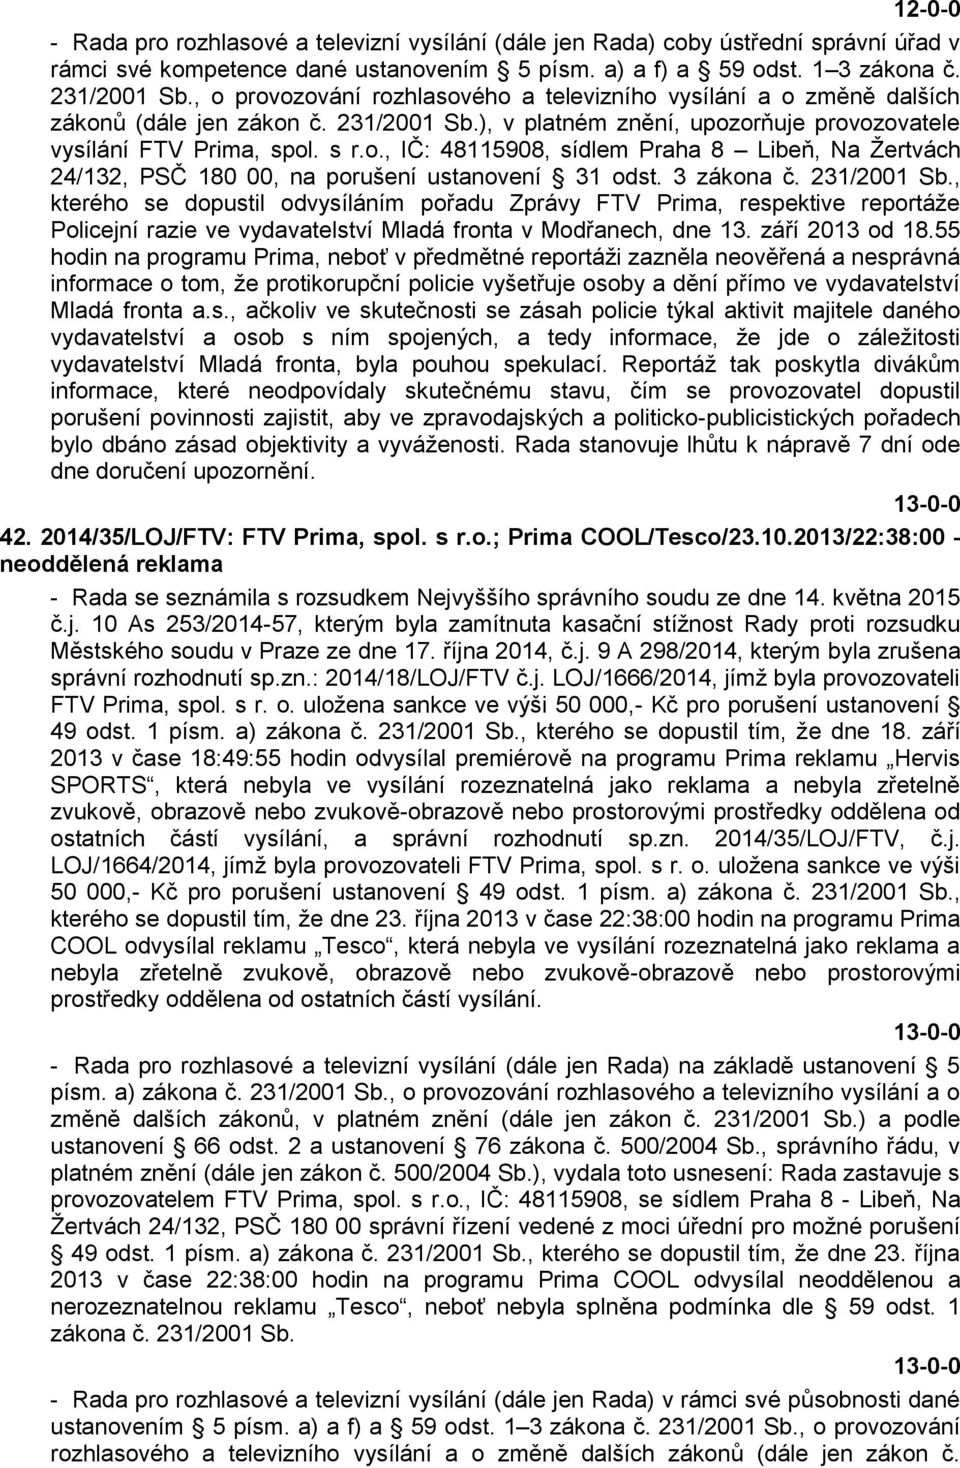 3 zákona č. 231/2001 Sb., kterého se dopustil odvysíláním pořadu Zprávy FTV Prima, respektive reportáže Policejní razie ve vydavatelství Mladá fronta v Modřanech, dne 13. září 2013 od 18.